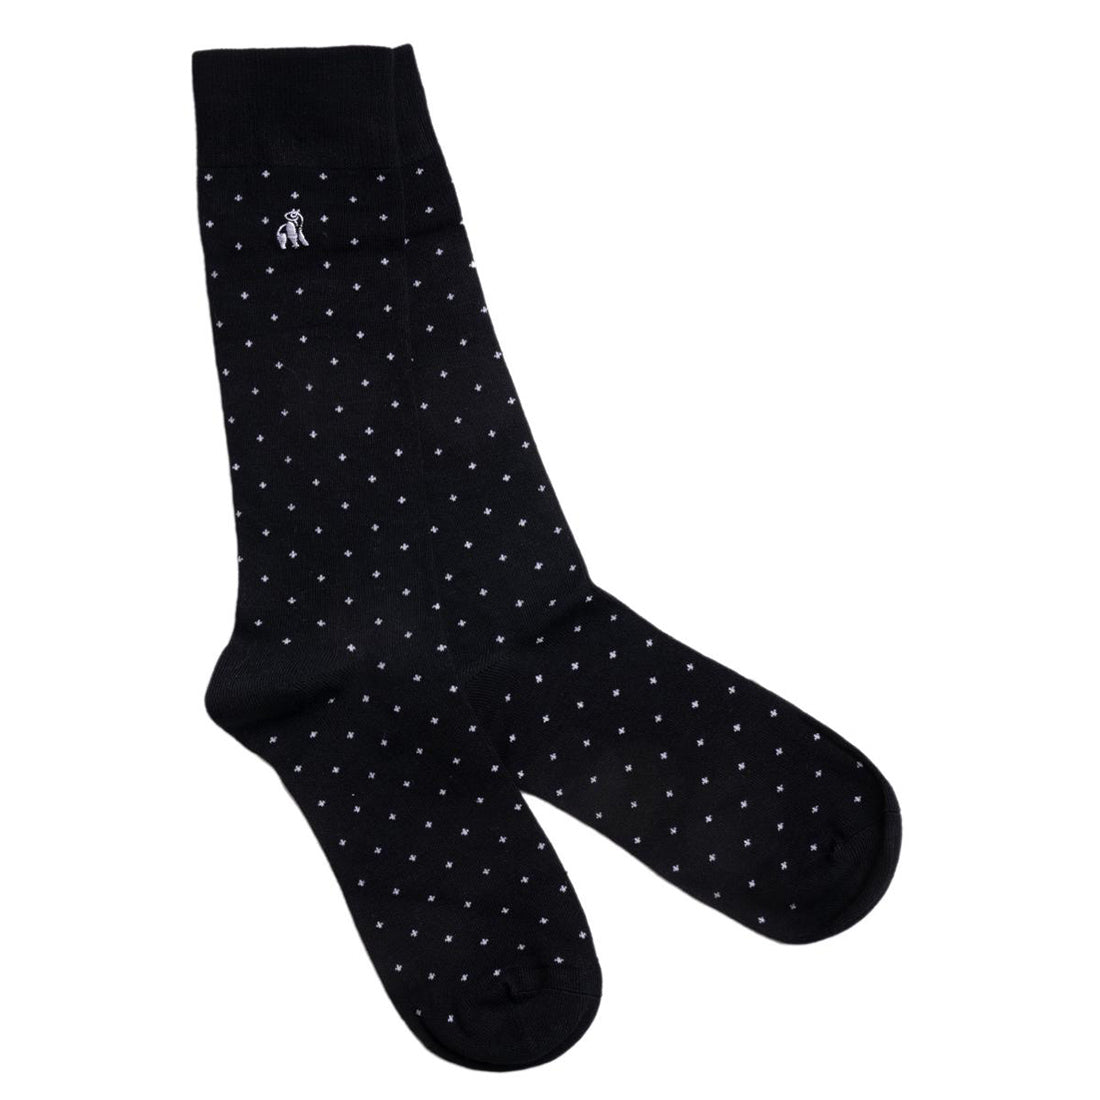 socks-spotted-black-bamboo-socks-1.jpg